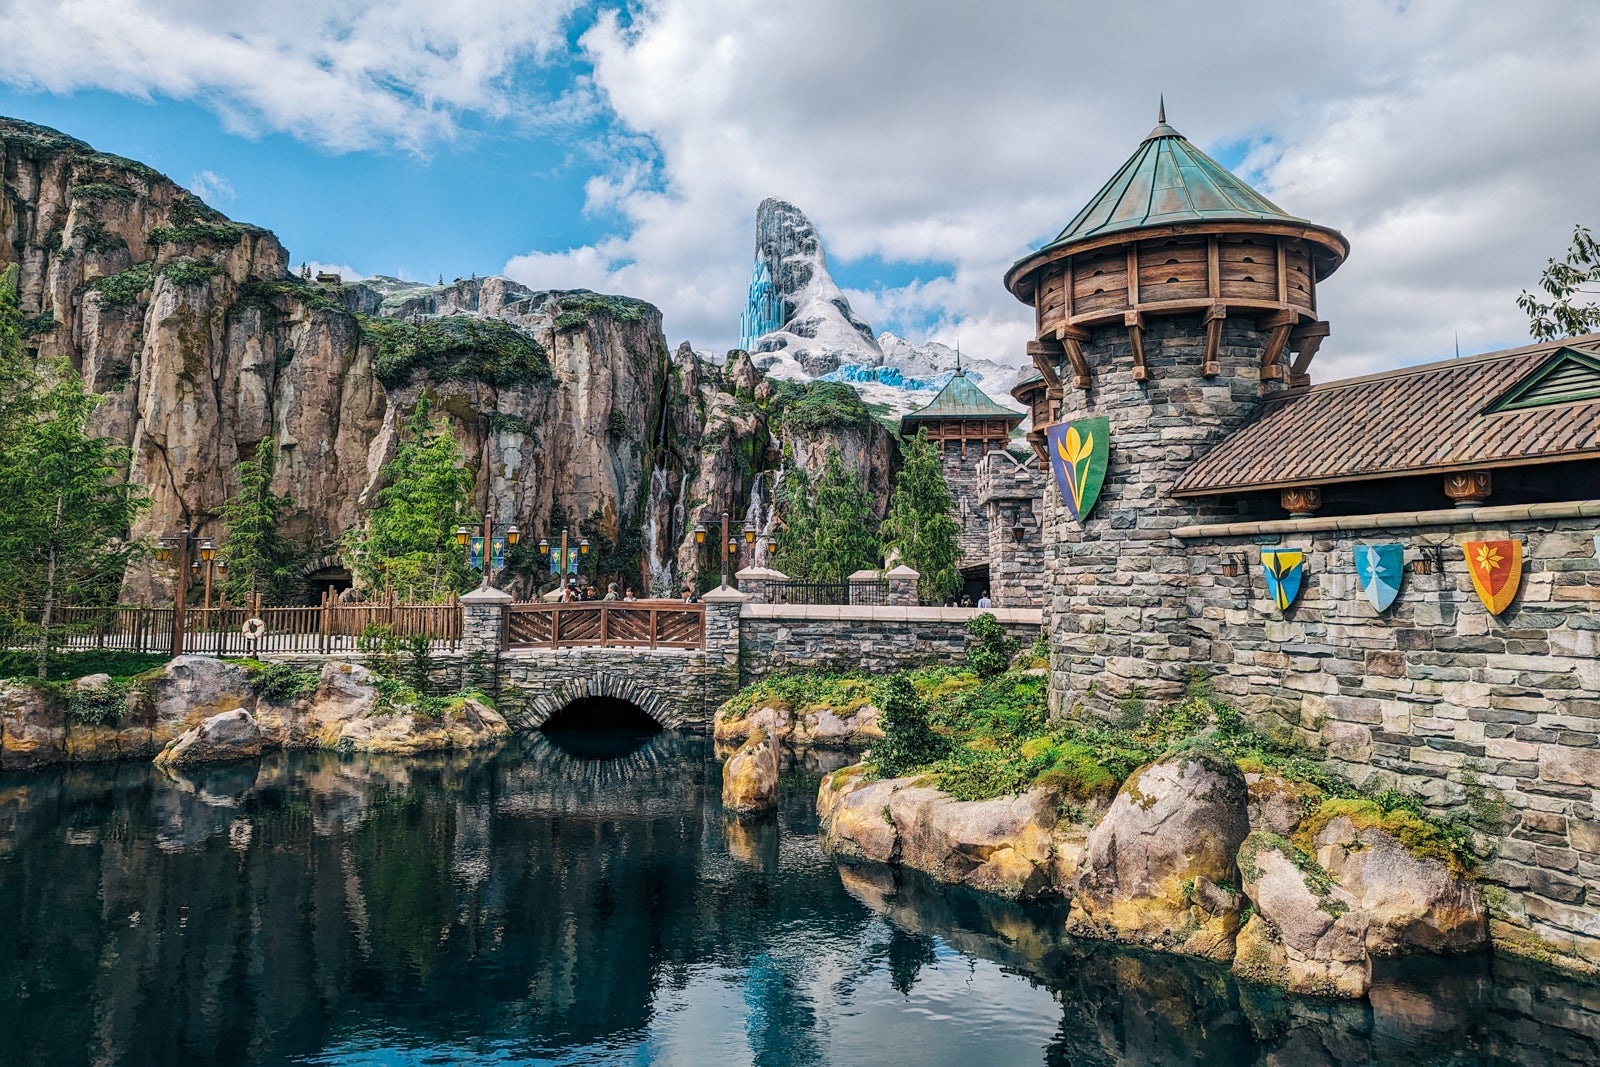 Fantasy Springs is Tokyo Disney’s biggest expansion yet — here’s a sneak peek